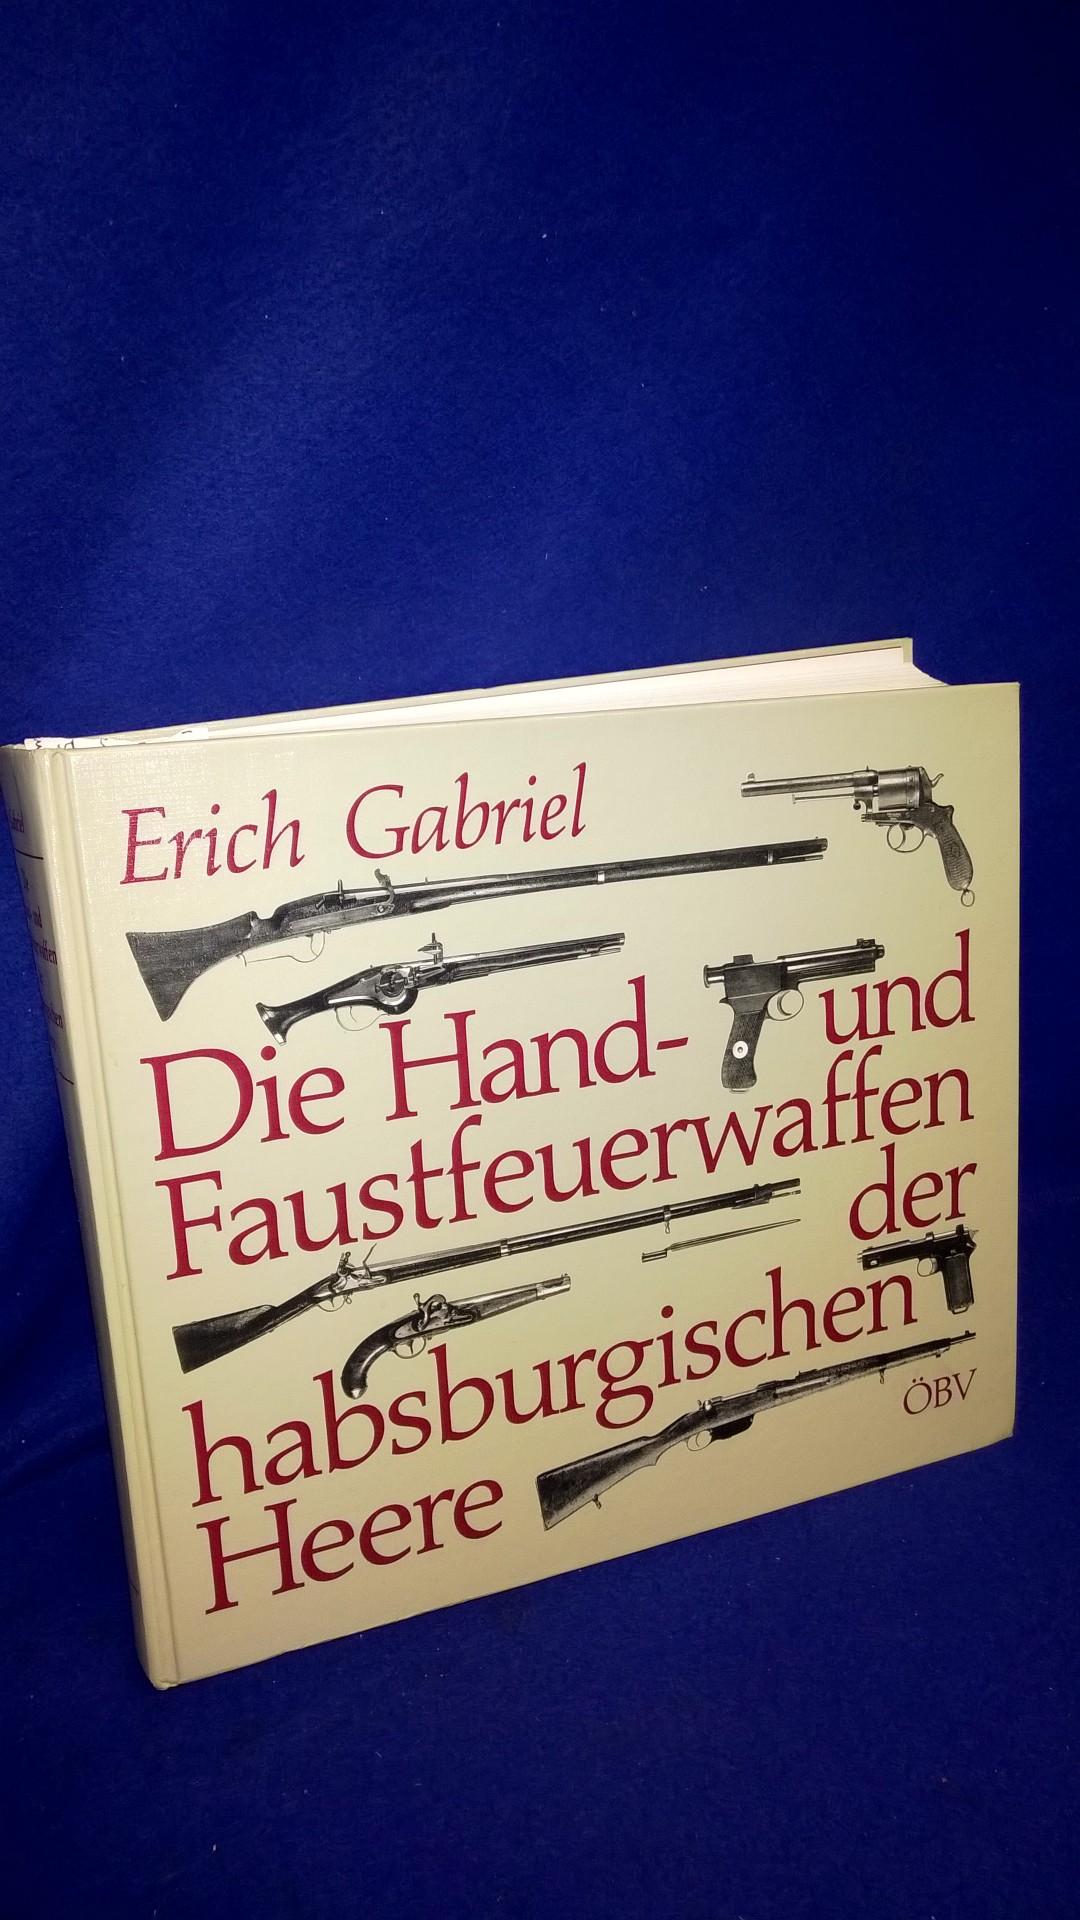 Die Hand- und Faustfeuerwaffen der habsburgischen Heere.